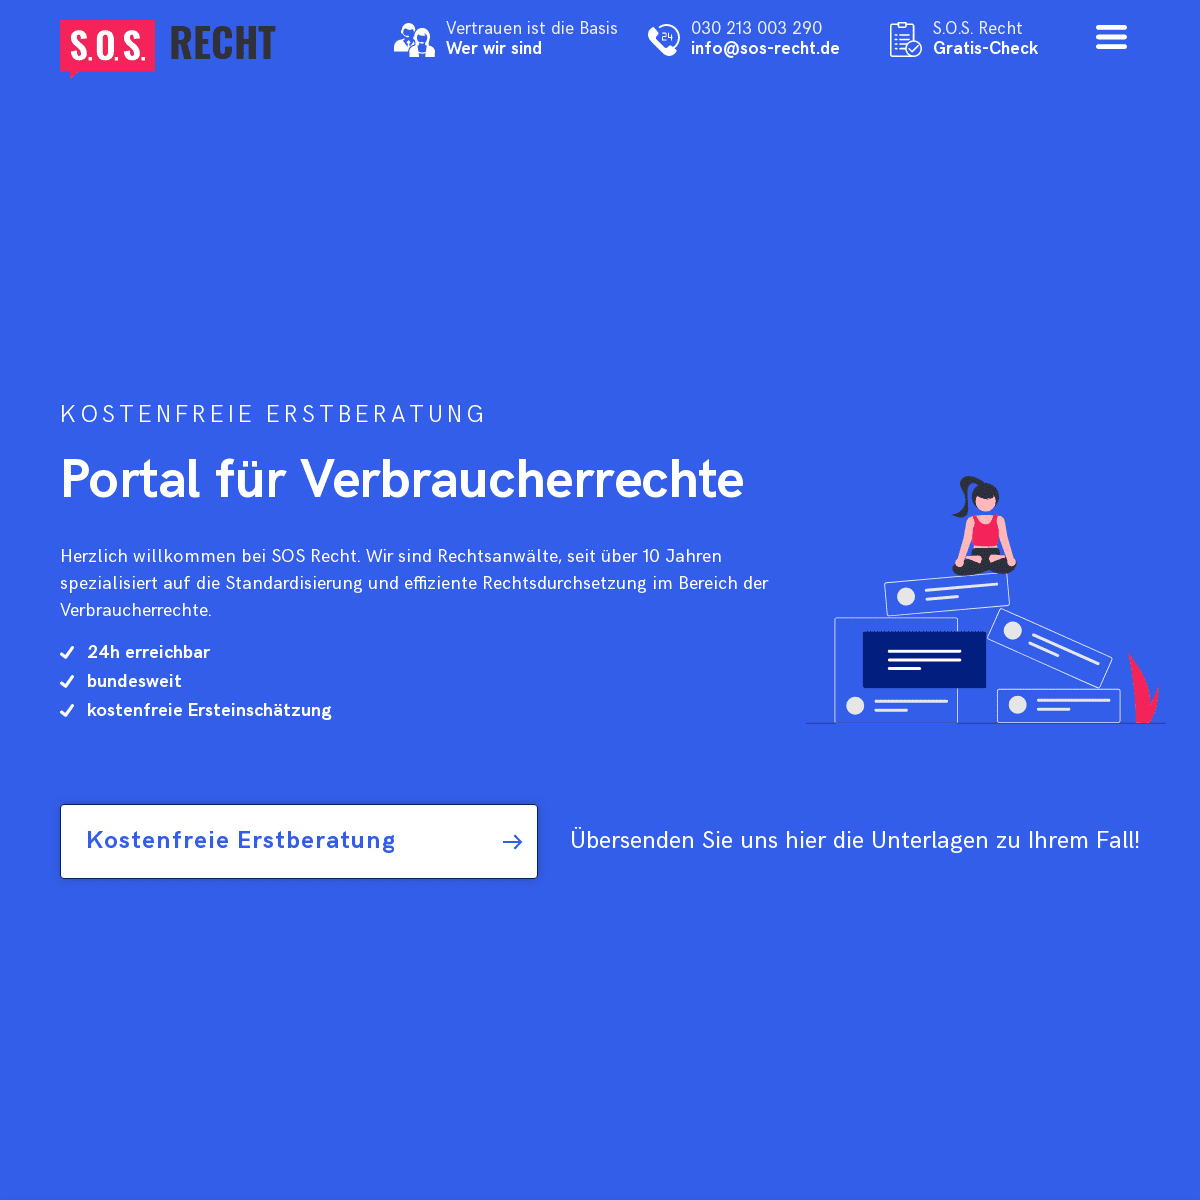 A complete backup of https://sos-recht.de